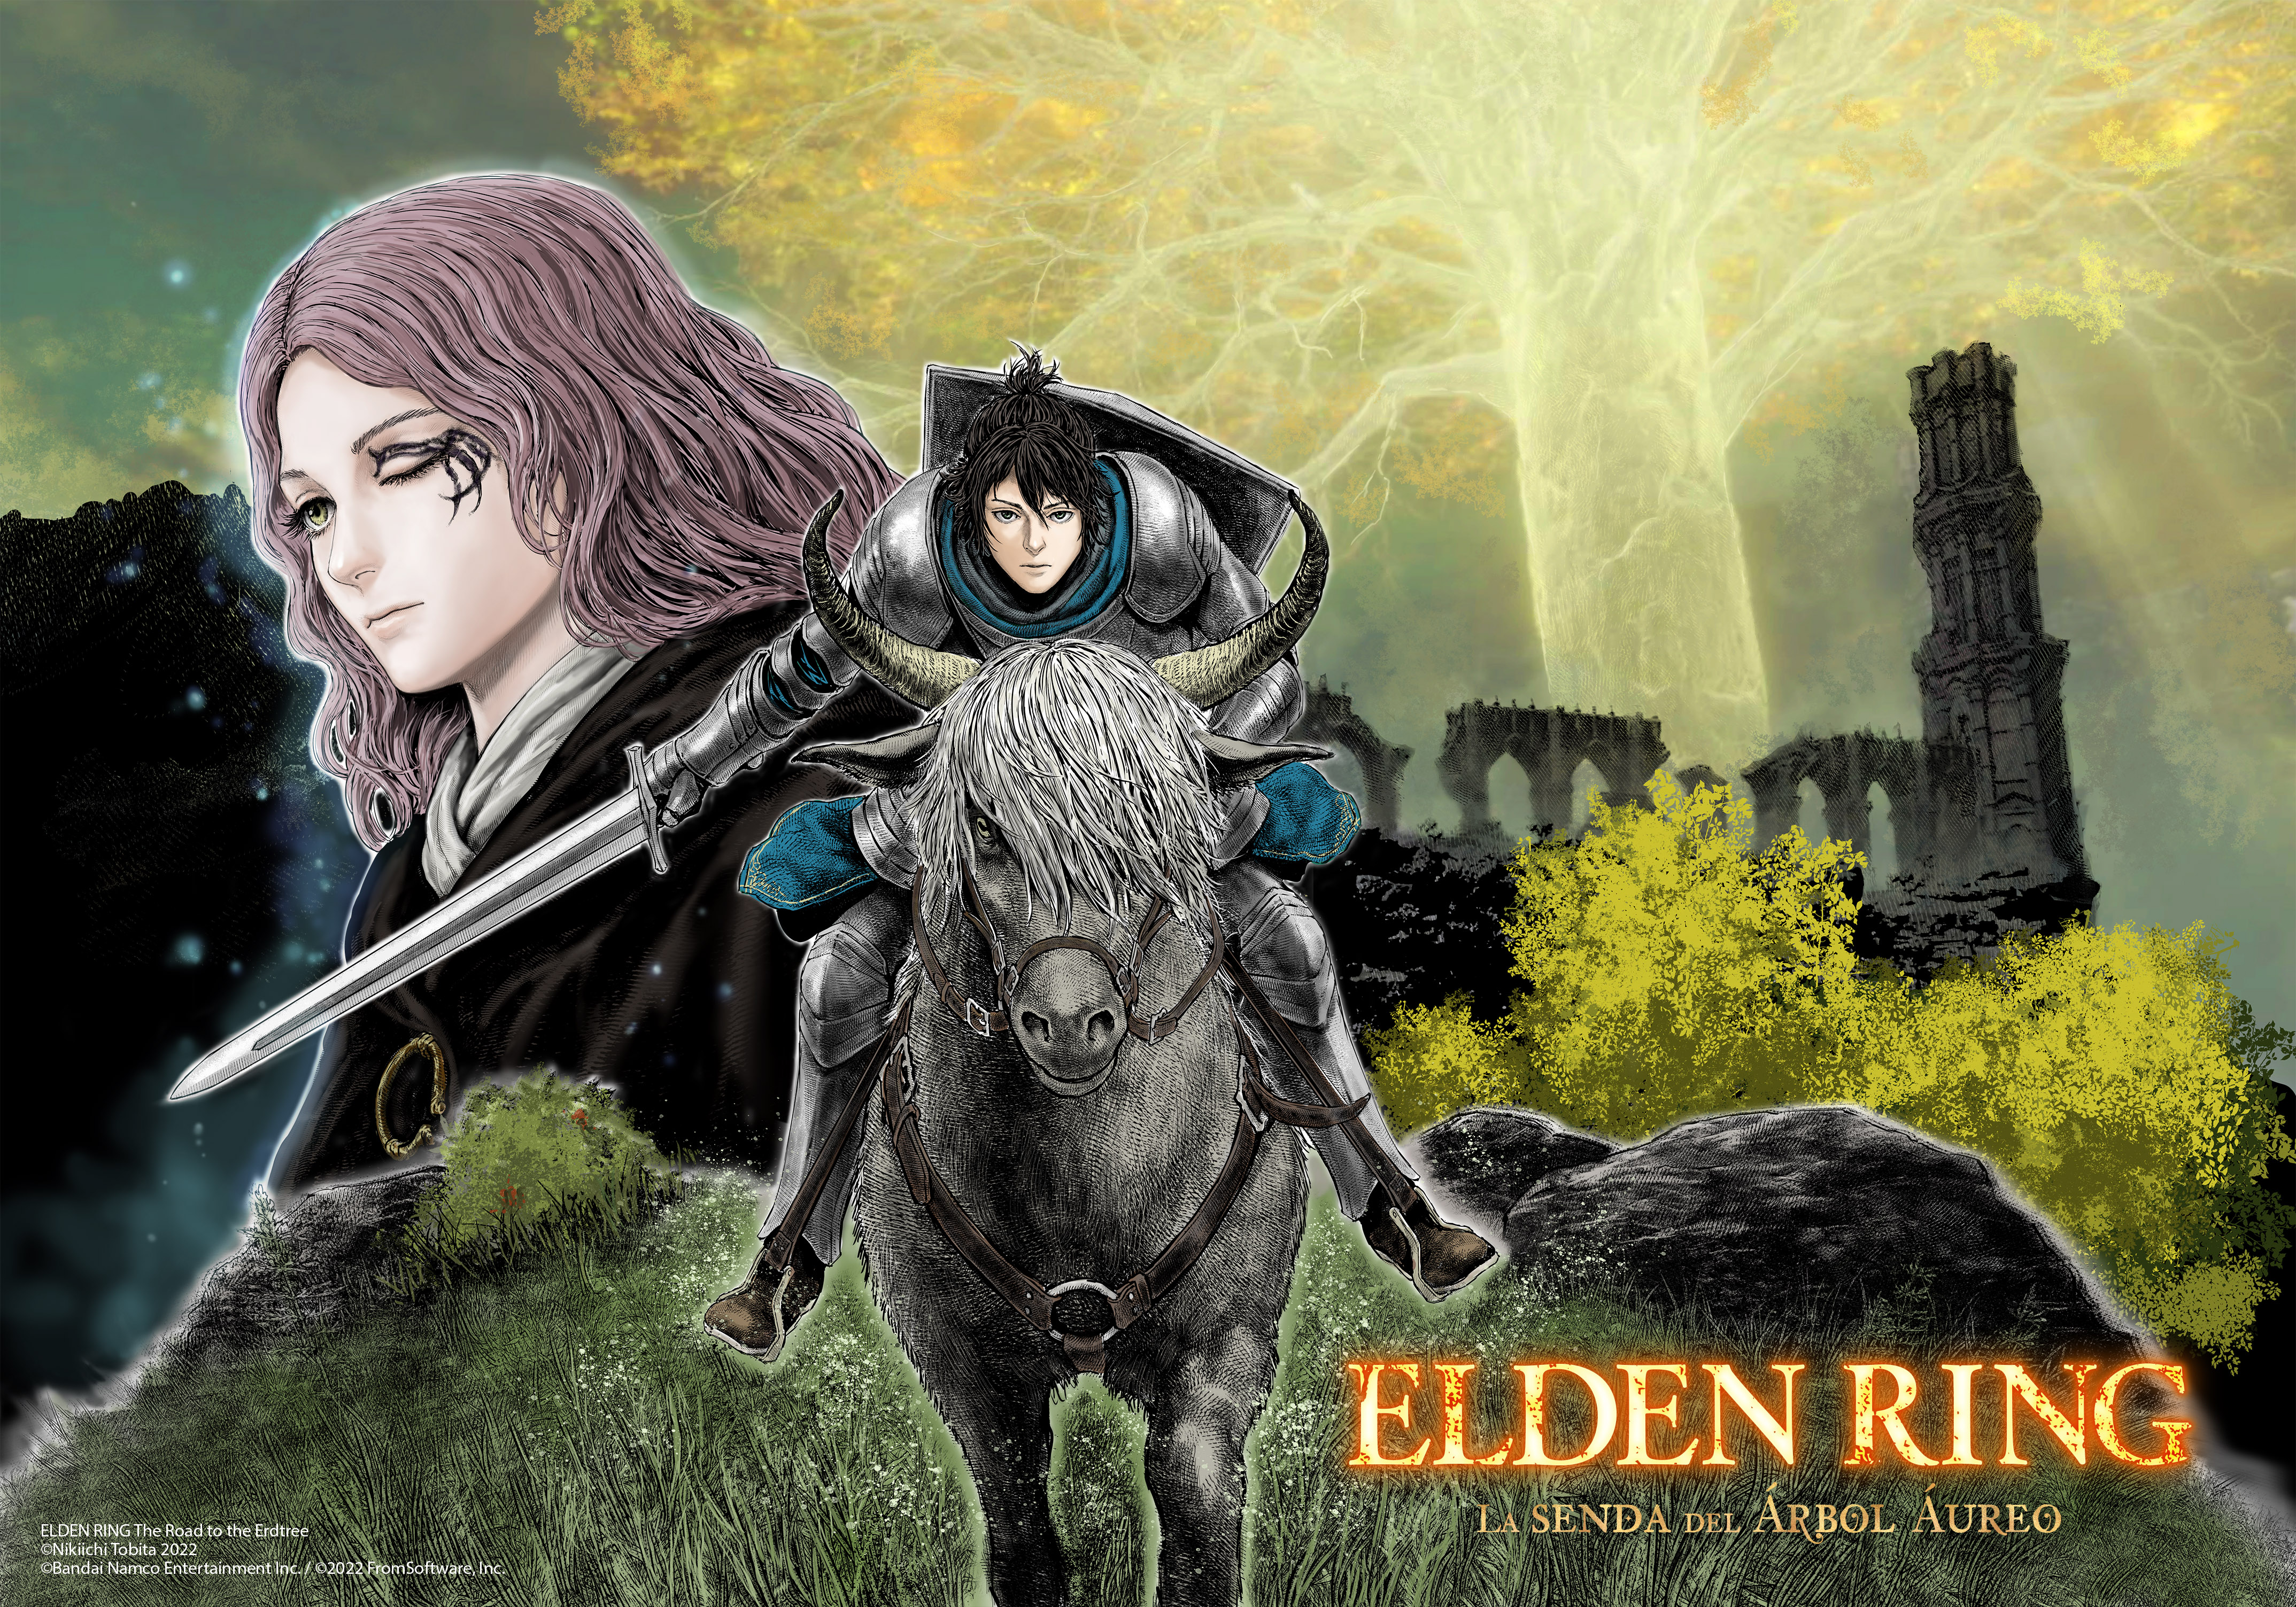 Norma Editorial Manga lanza en exclusiva el manga de Elden Ring, adaptación  del gran videojuego de éxito mundial - Norma Editorial